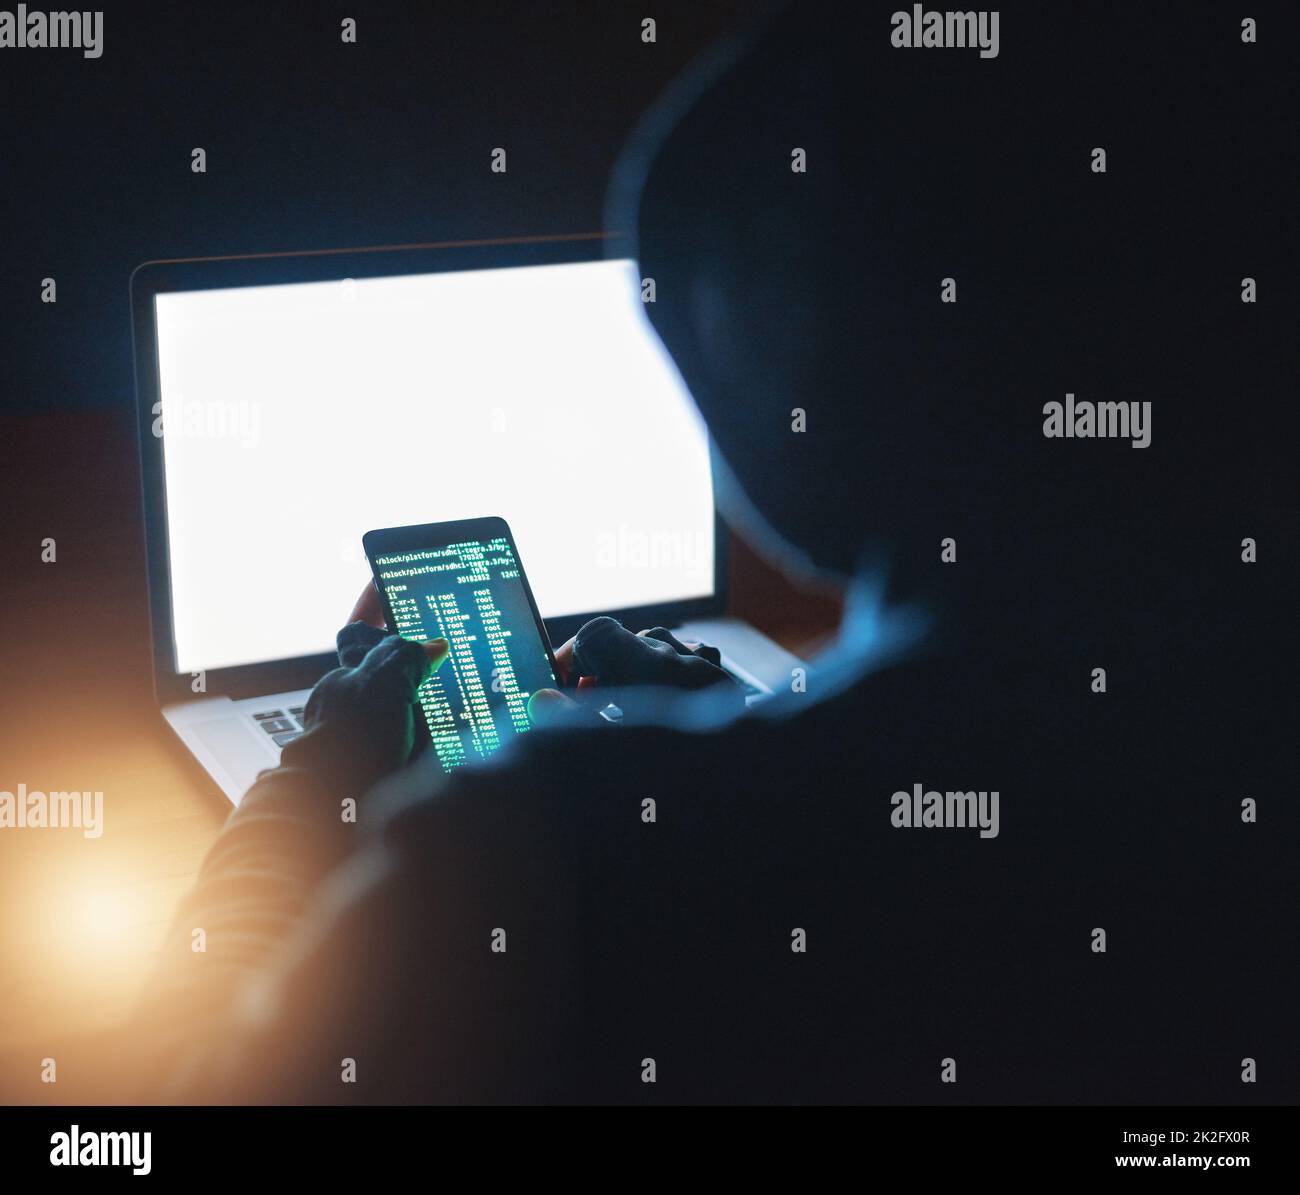 Accès à tous vos mots de passe. Photo d'un pirate méconnaissable à l'aide d'un téléphone portable et d'un ordinateur portable dans l'obscurité. Banque D'Images